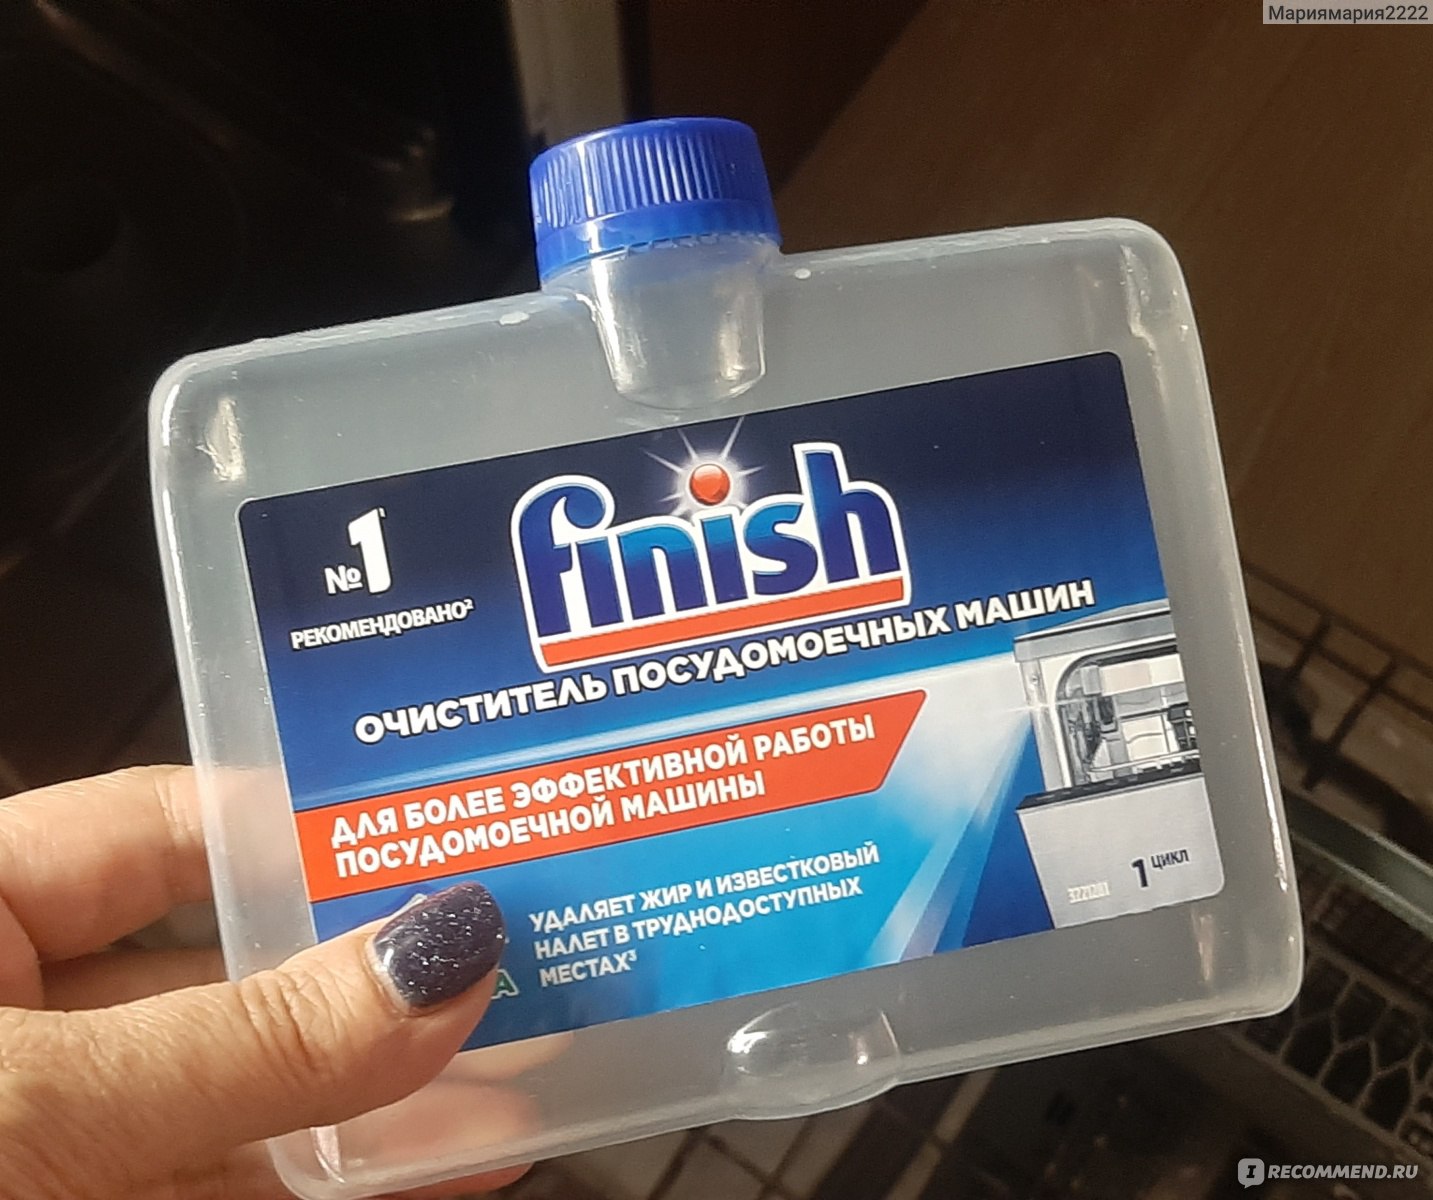 Можно ли залить средство для прочистки труб в посудомоечную машину